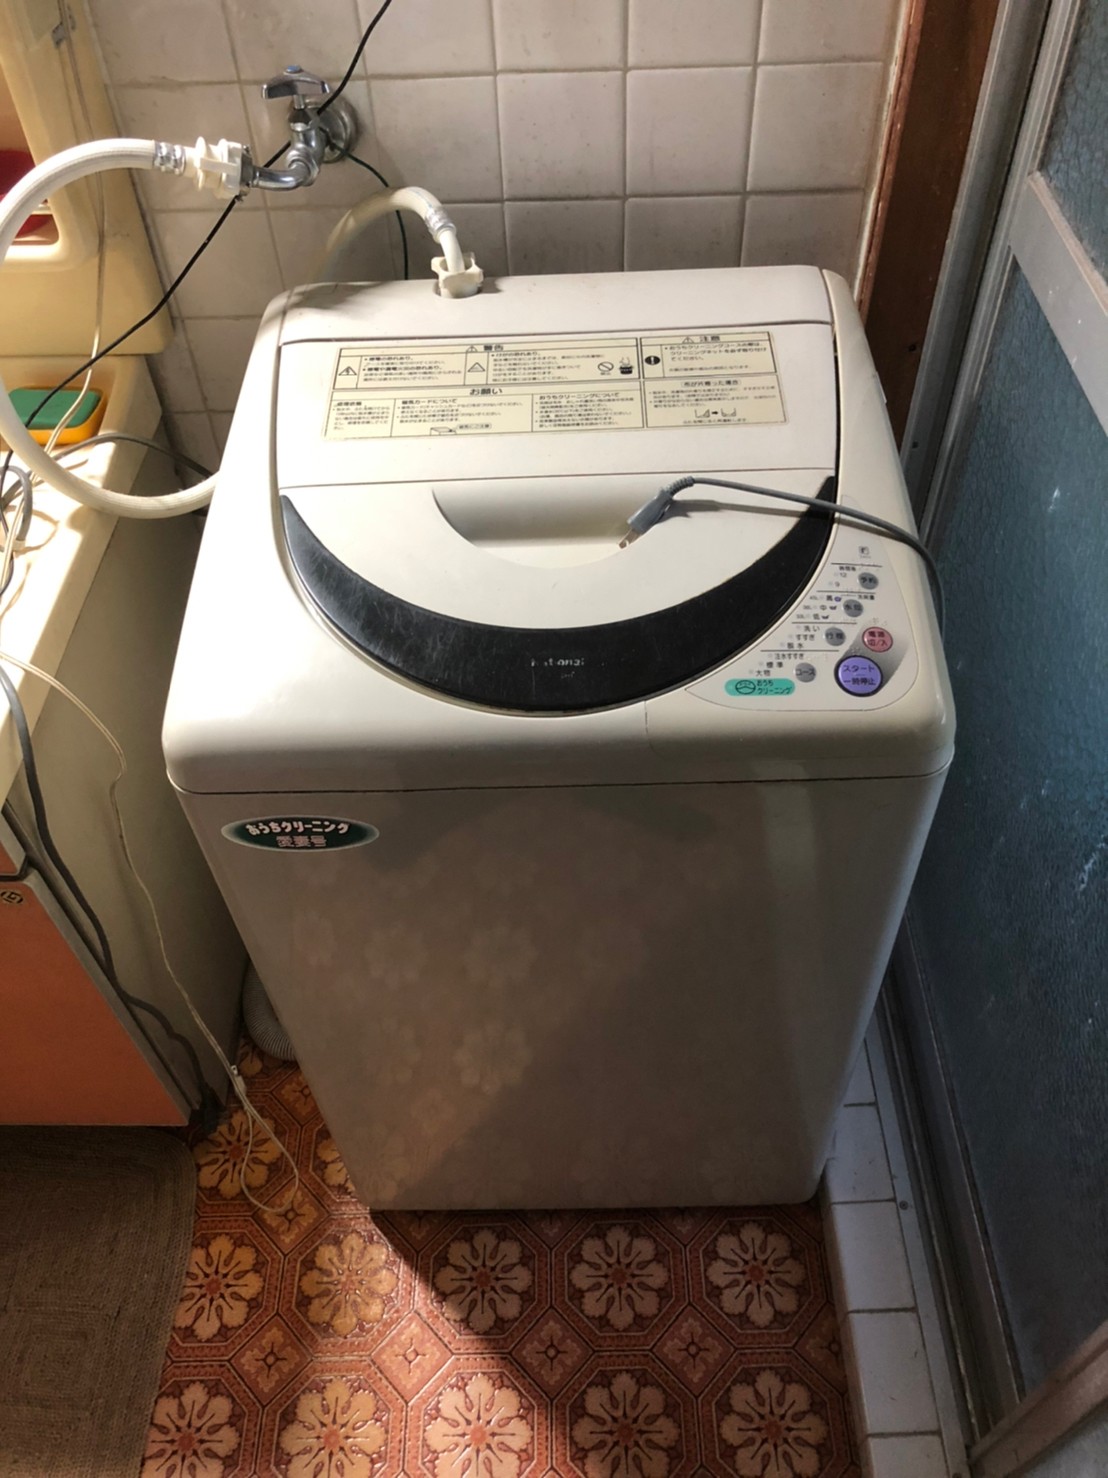 TOSHIBA 全自動洗濯機。 - alisca.ma